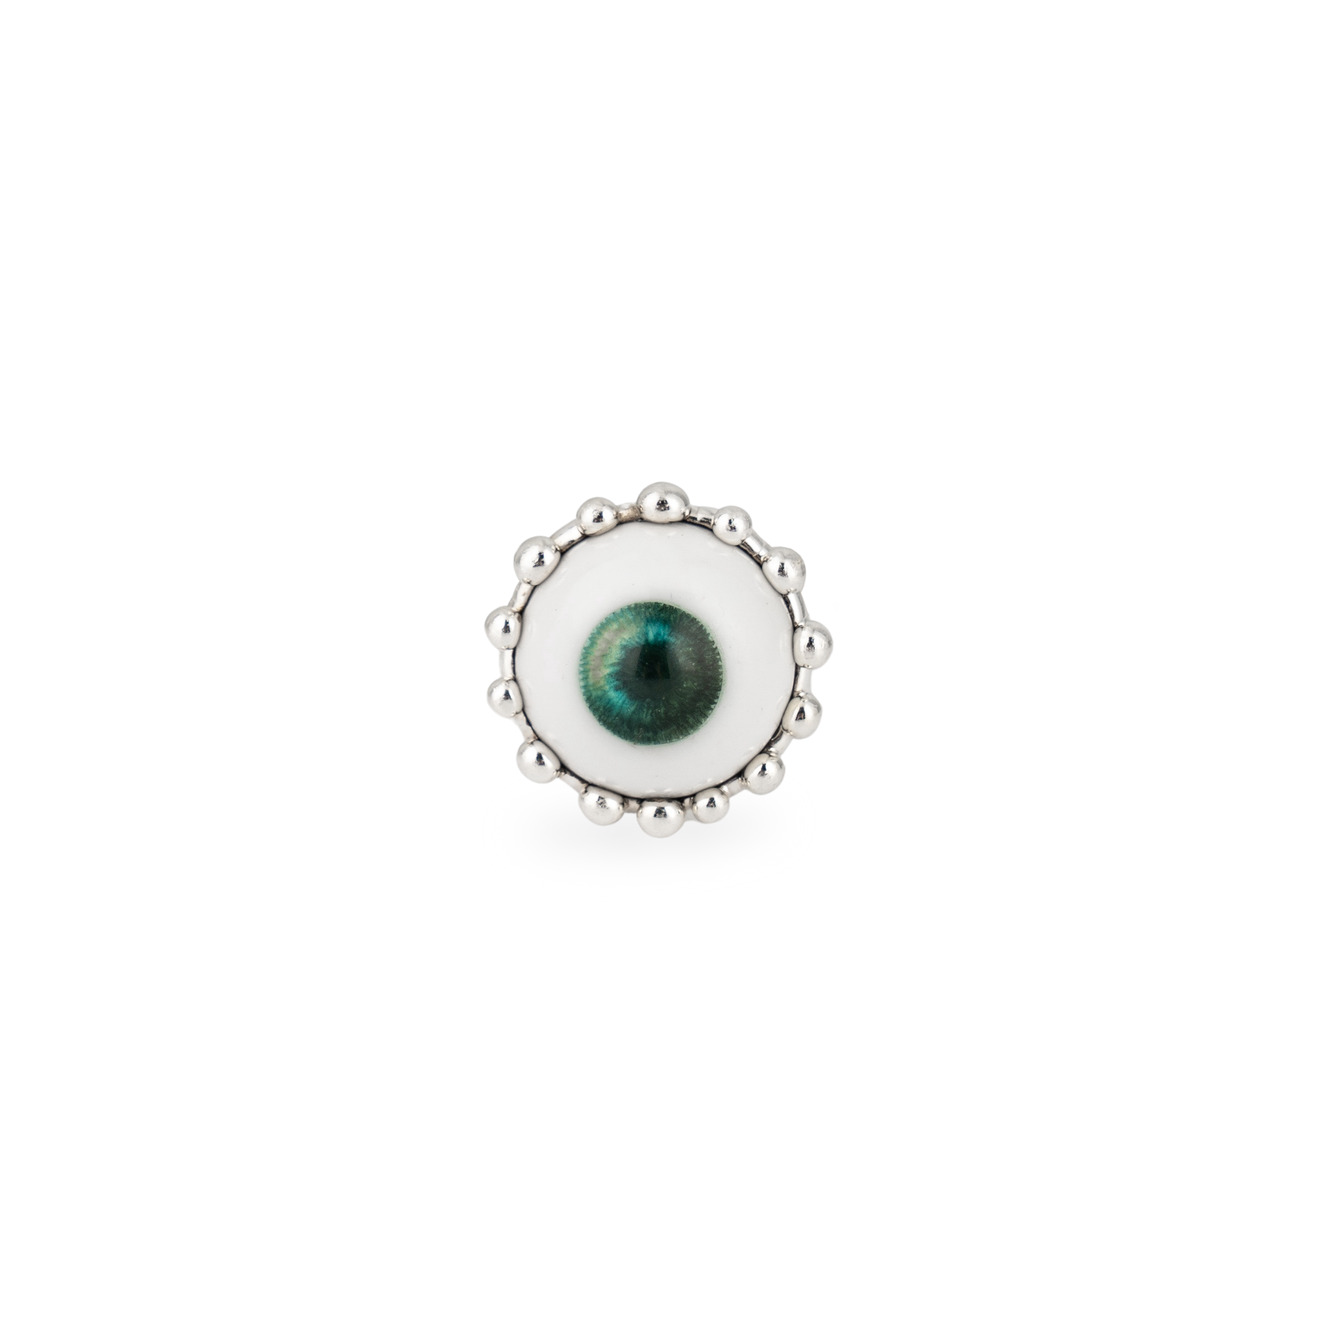 Poison Drop Lab Кольцо с зелёным глазом poison drop lab кольцо с кабошоном из дихроического синего стекла